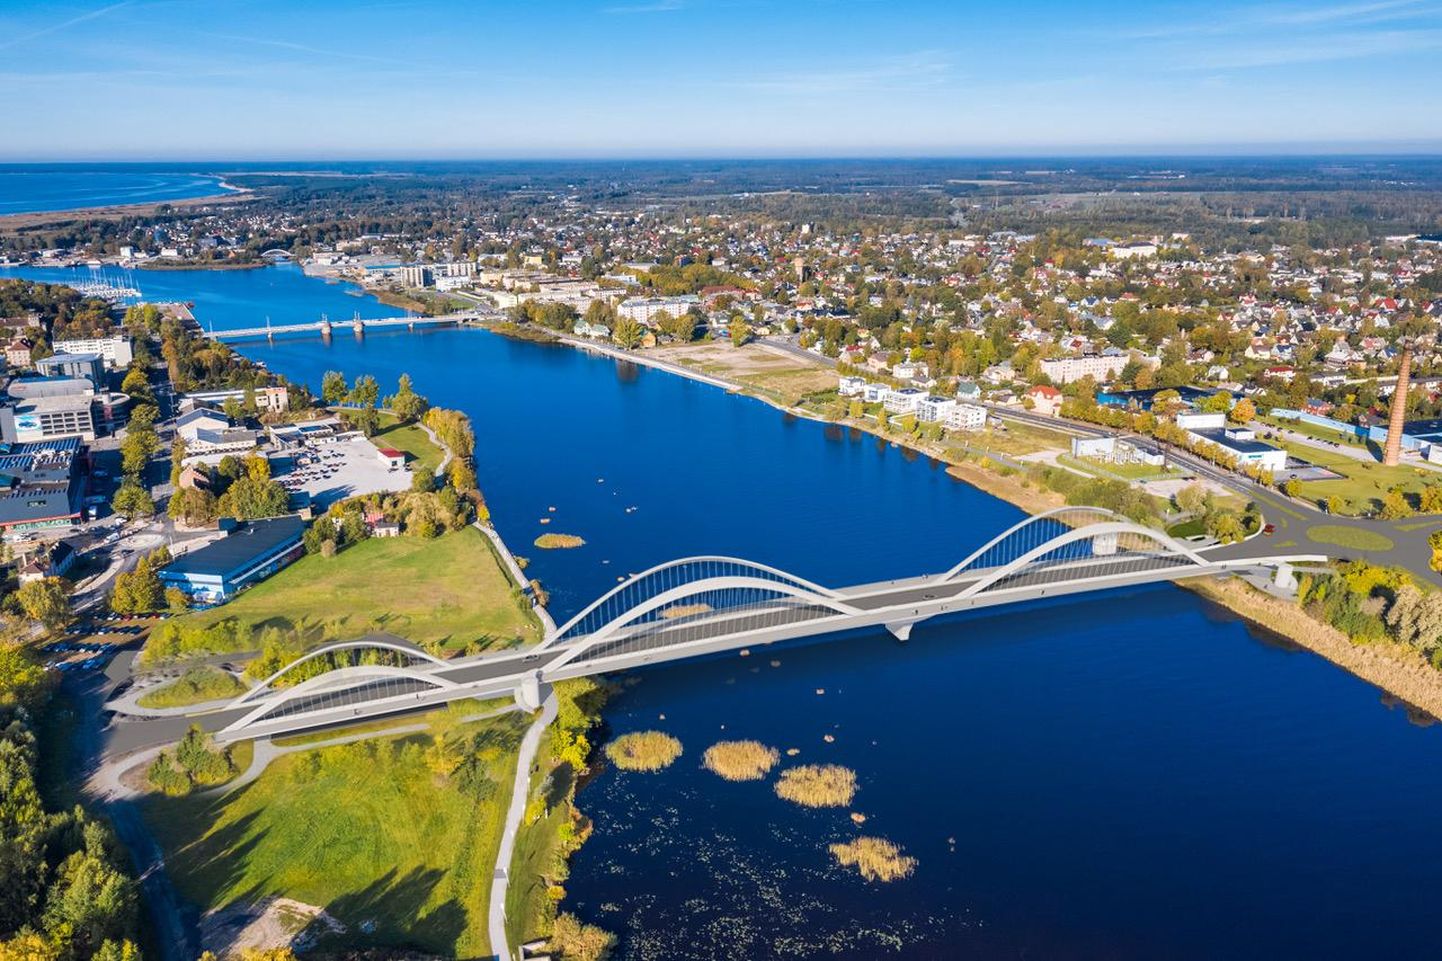 Omavalitsuste probleemide võibolla silmapaistvaima näitena on Pärnu silla hange kaks korda läbi kukkunud. Silla riigieelarve toetuse küsimus on nüüd aga ka võimuliidu tülli ajanud.